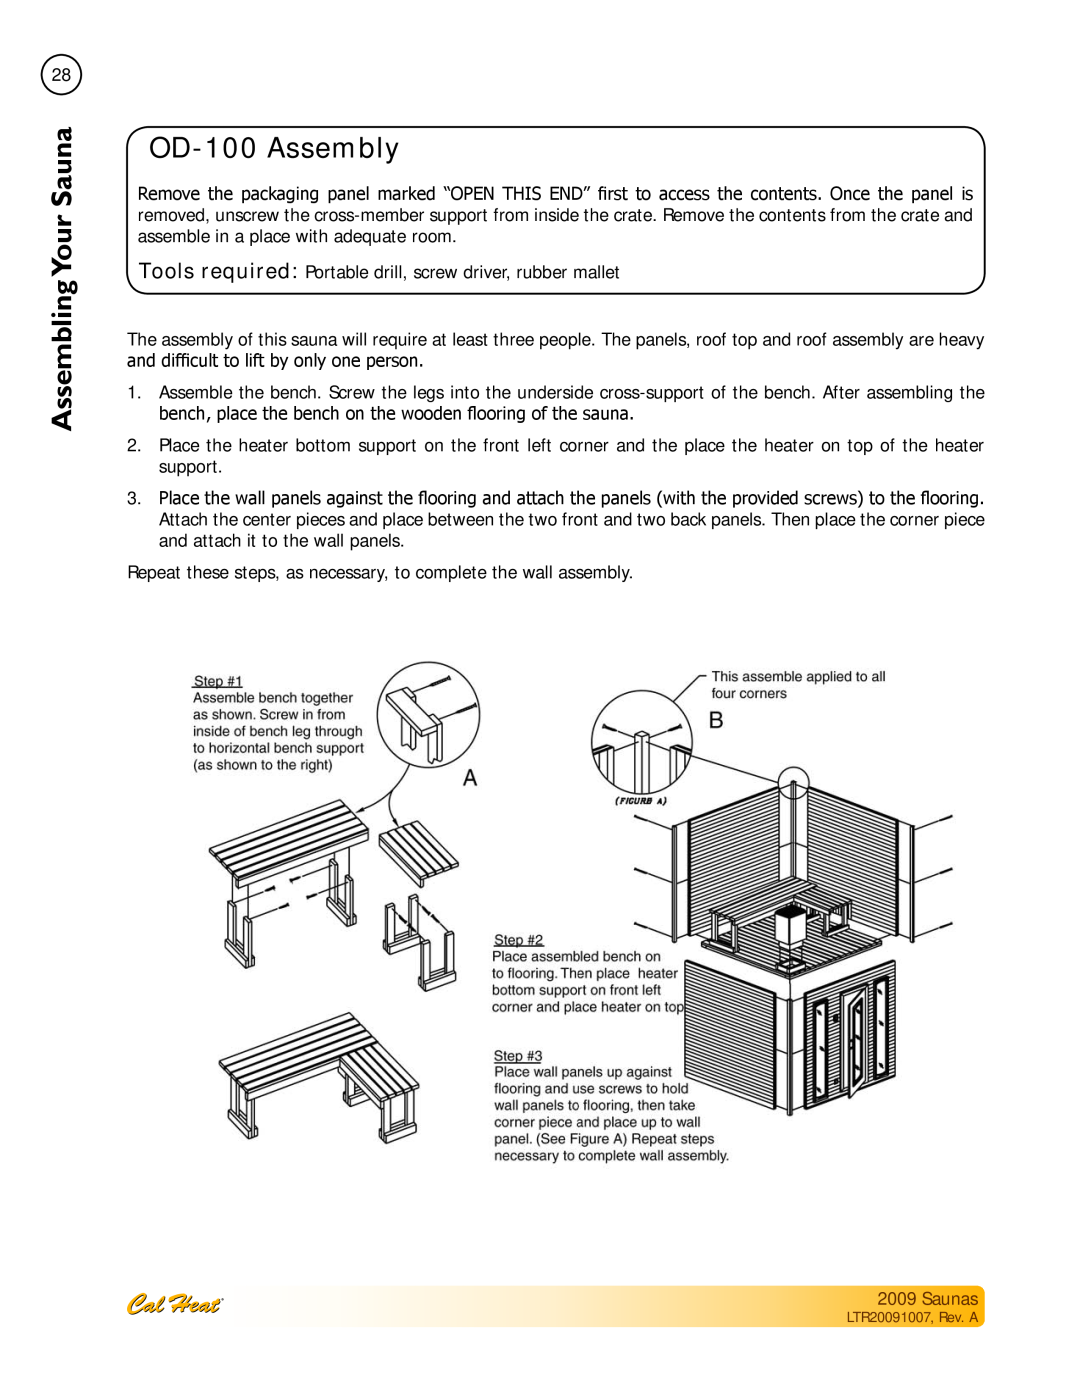 Cal Spas Saunas manual OD-100Assembly, Assembling SaunaYour 